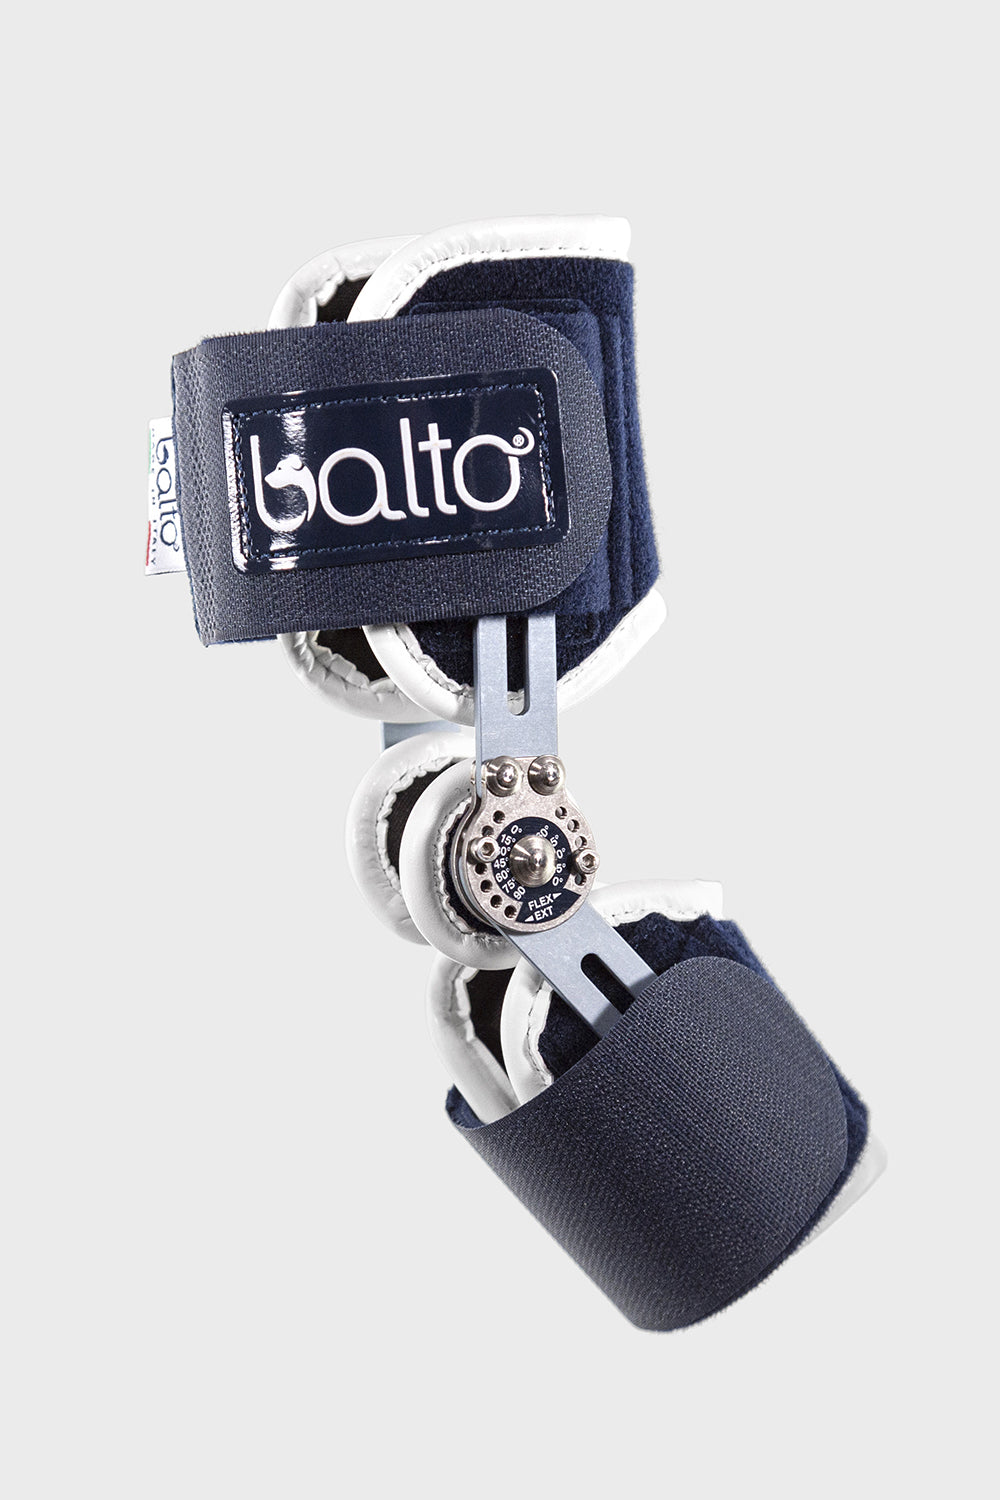 Balto® Flexor - Adjustable Hock Brace